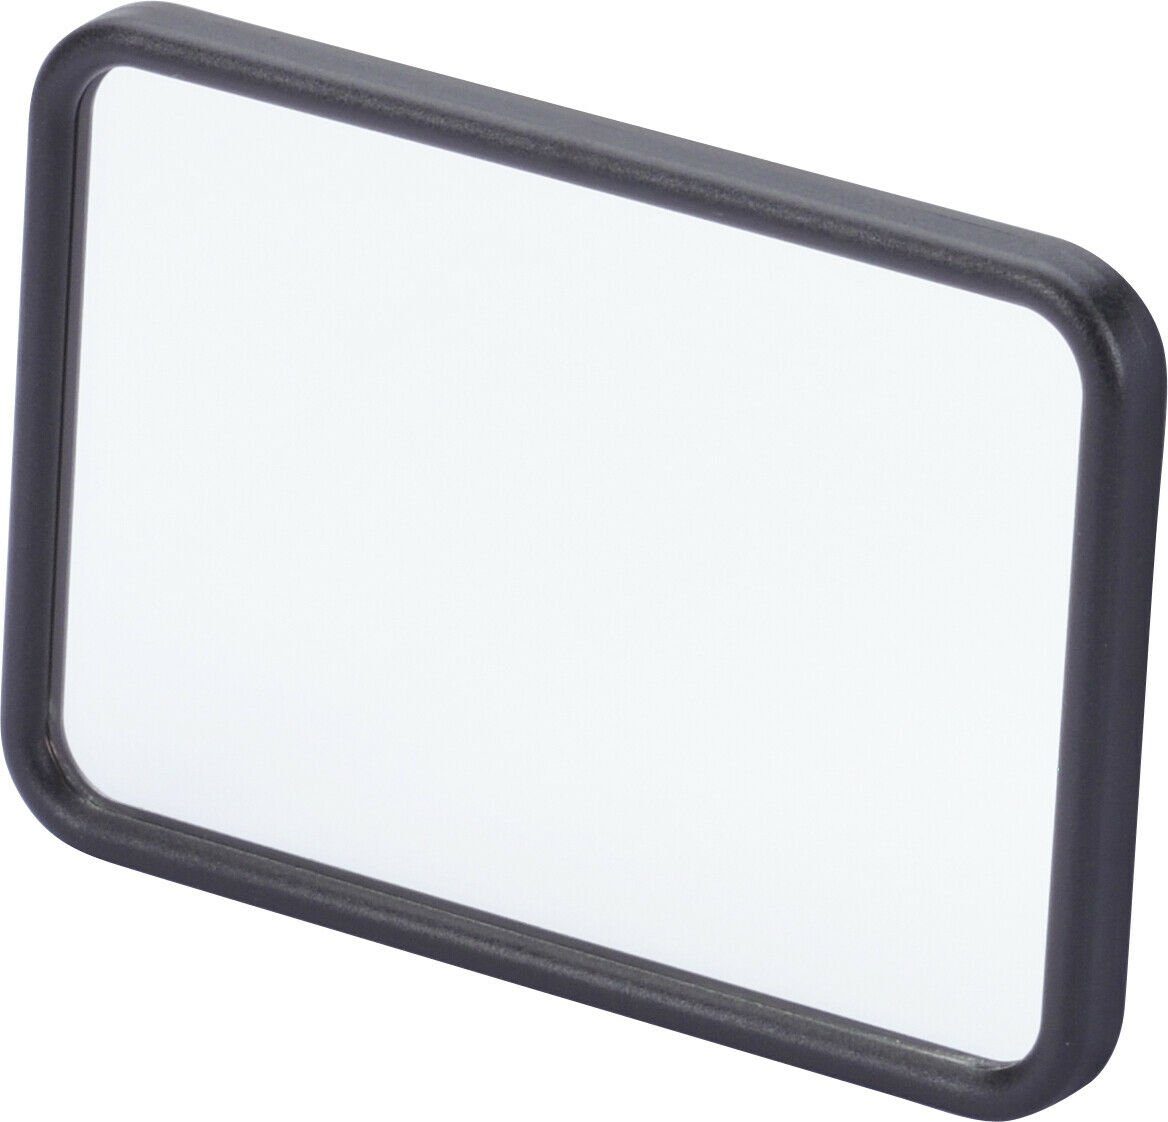 CarStyling Schminkspiegel Zusatzspiegel MakeUp zweiter Spiegel  Sonnenblendenspiegel Auto extra Spiegel